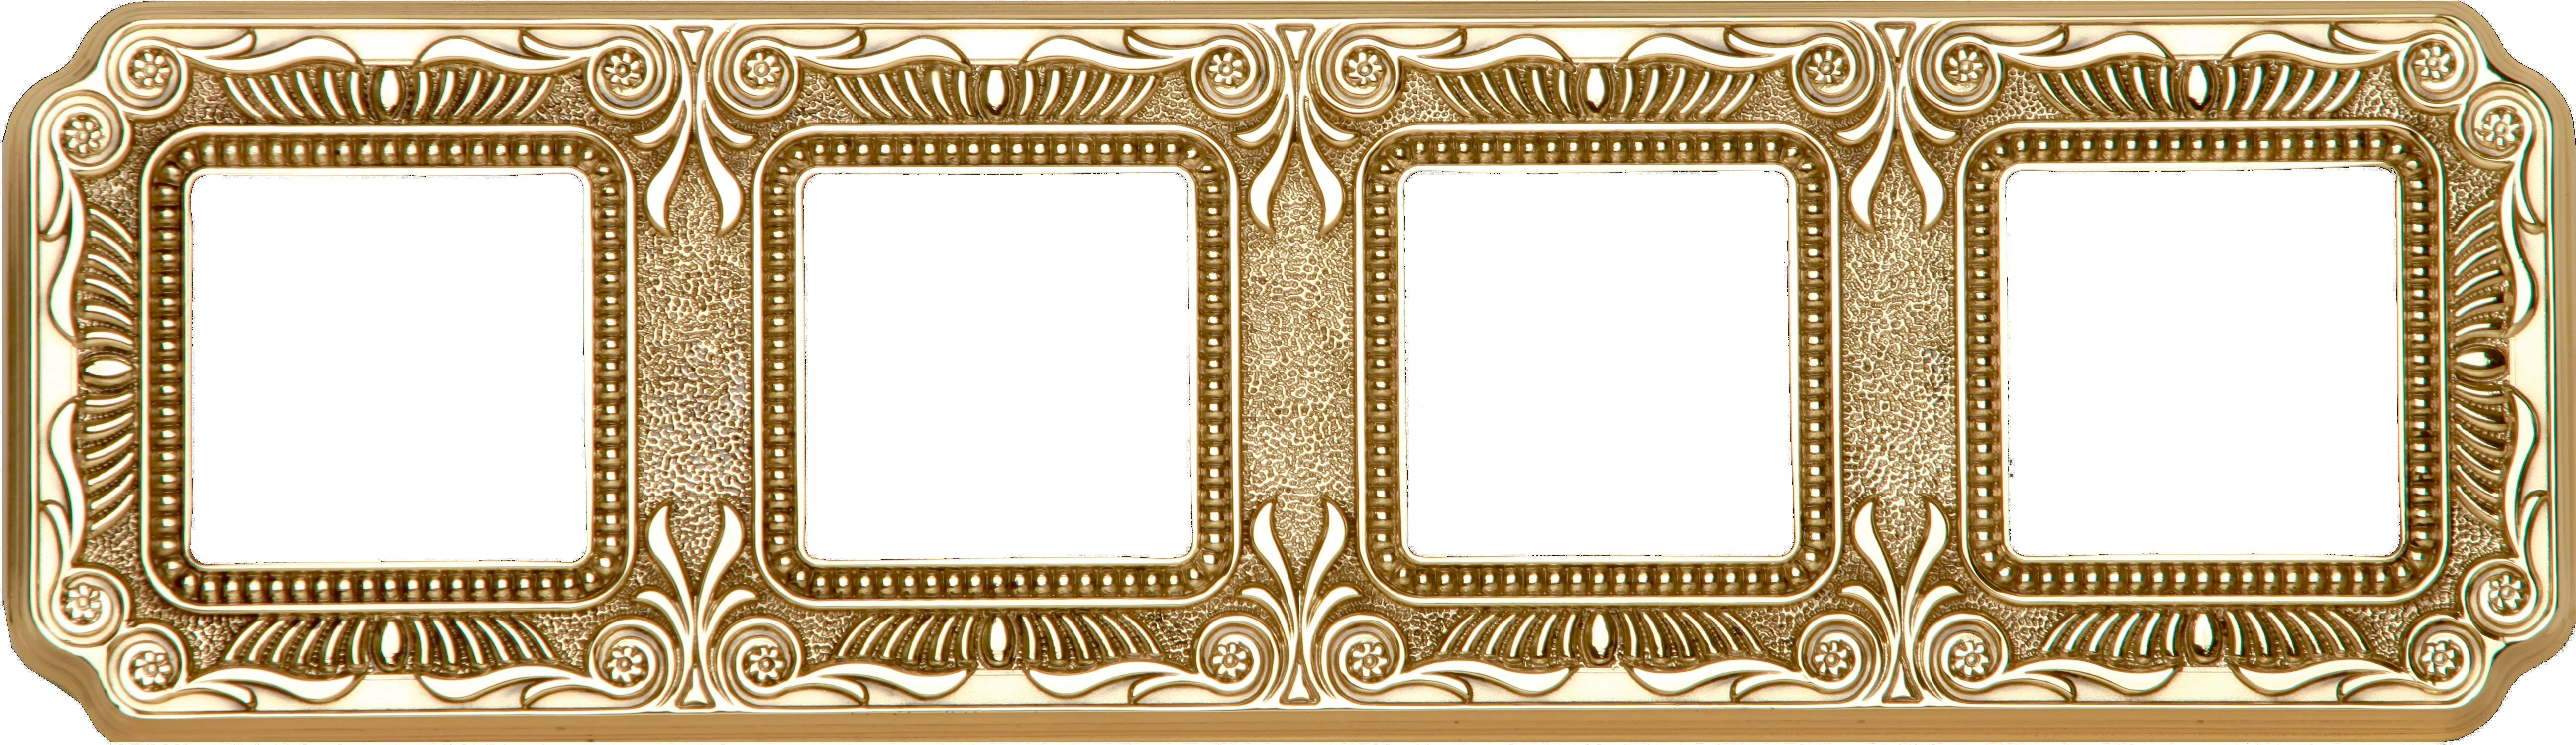  артикул FD01364OB название Рамка 4-ая (четверная), цвет Светлое золото, TOSCANA FIRENZE, Fede